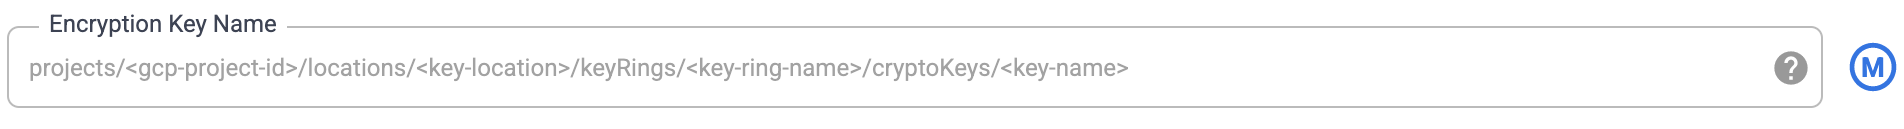 Encryption key names